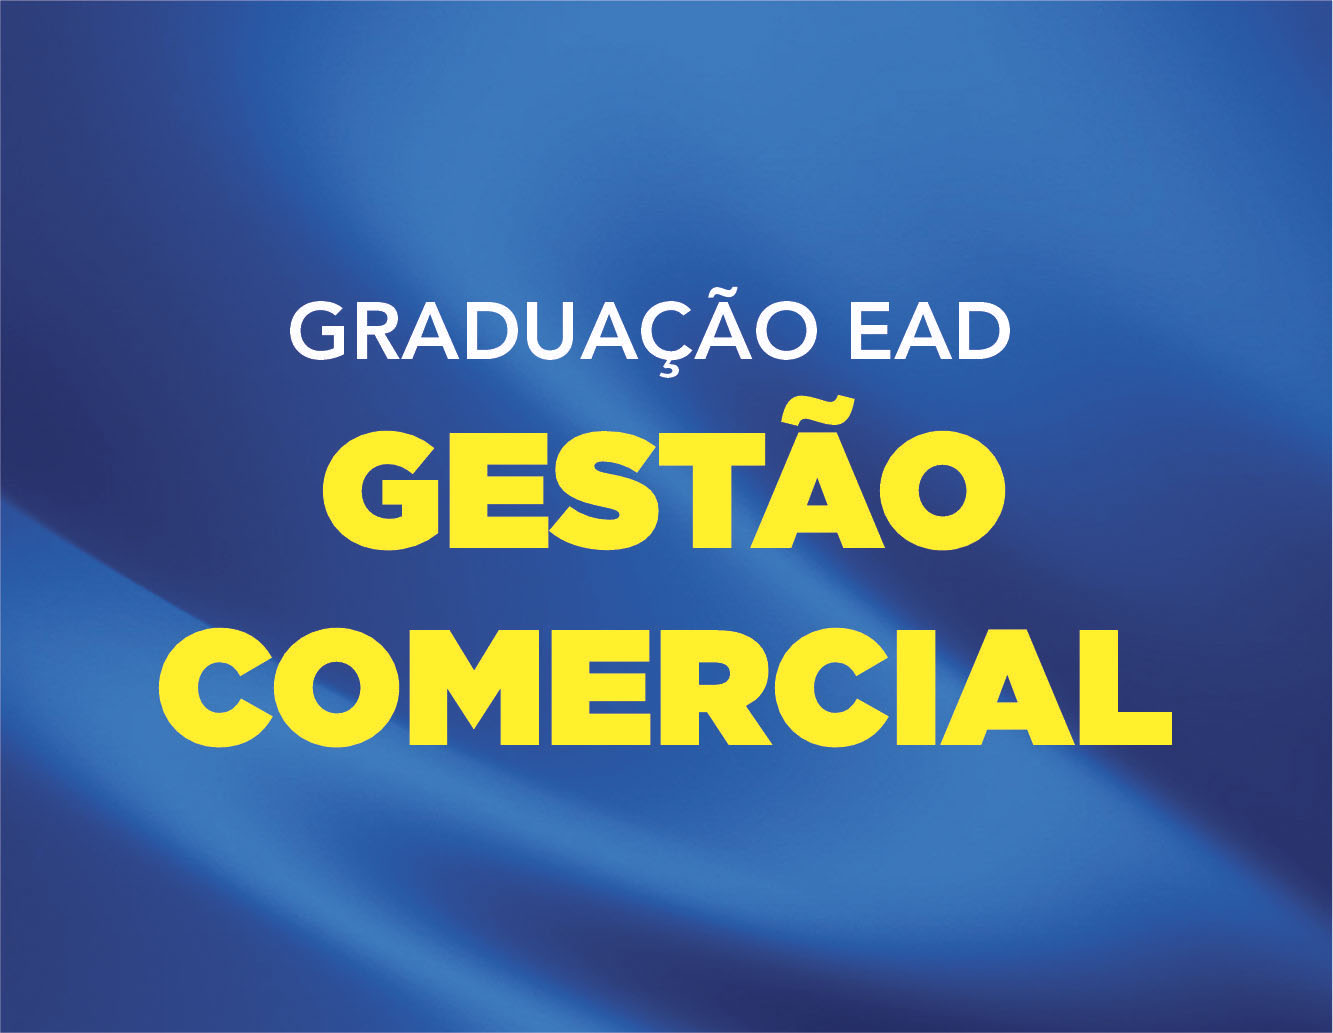 GESTÃO COMERCIAL